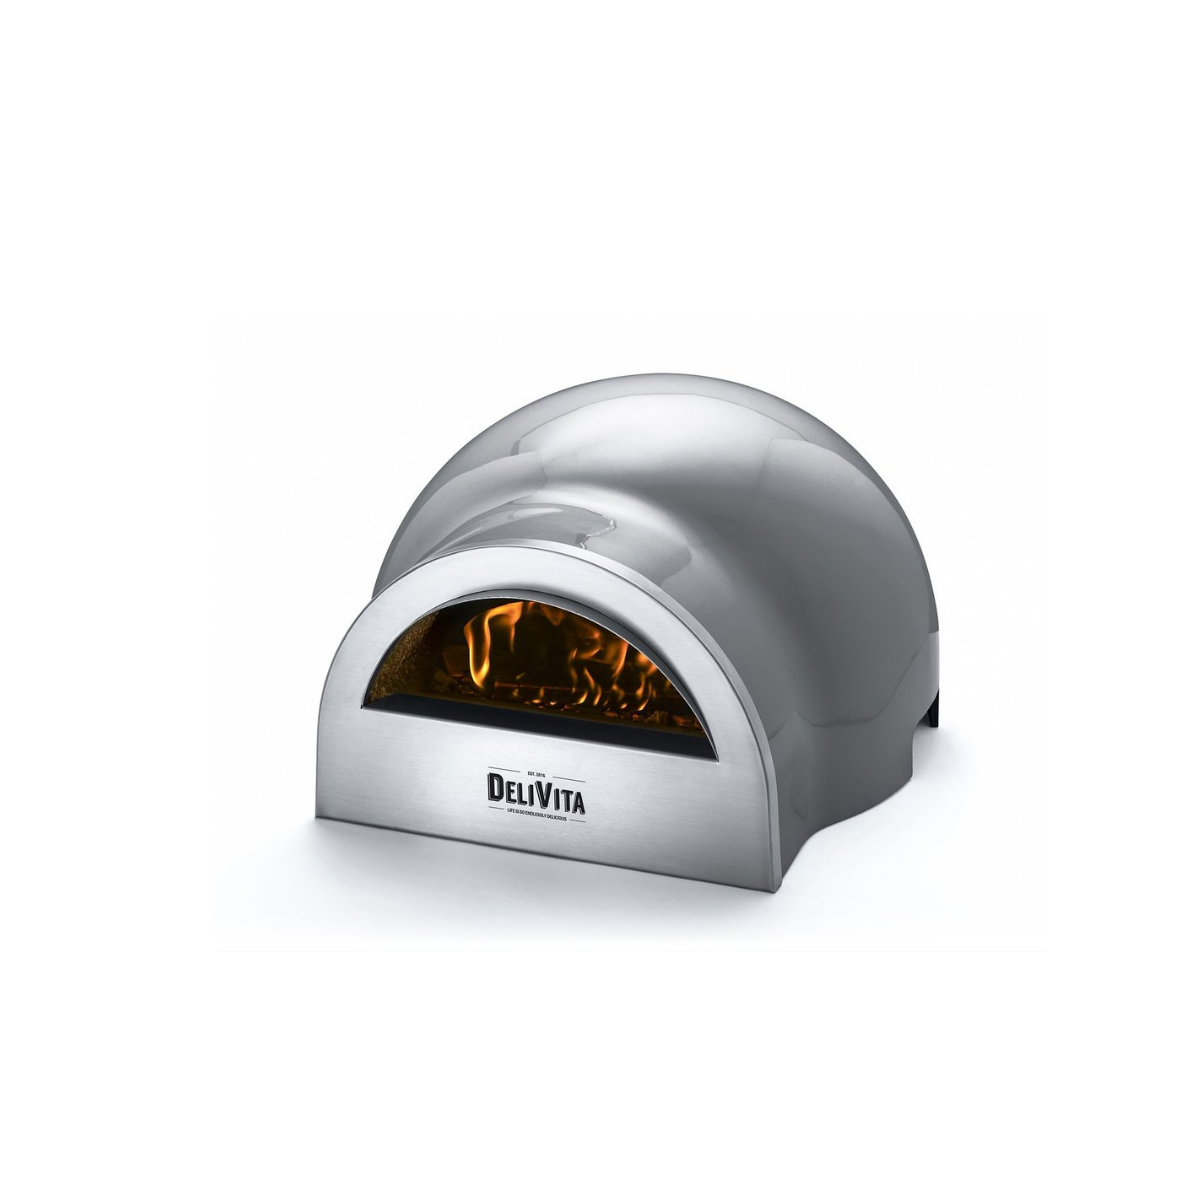 Delivita Pizza Oven – The Hale Grey Oven – Bright and Shine